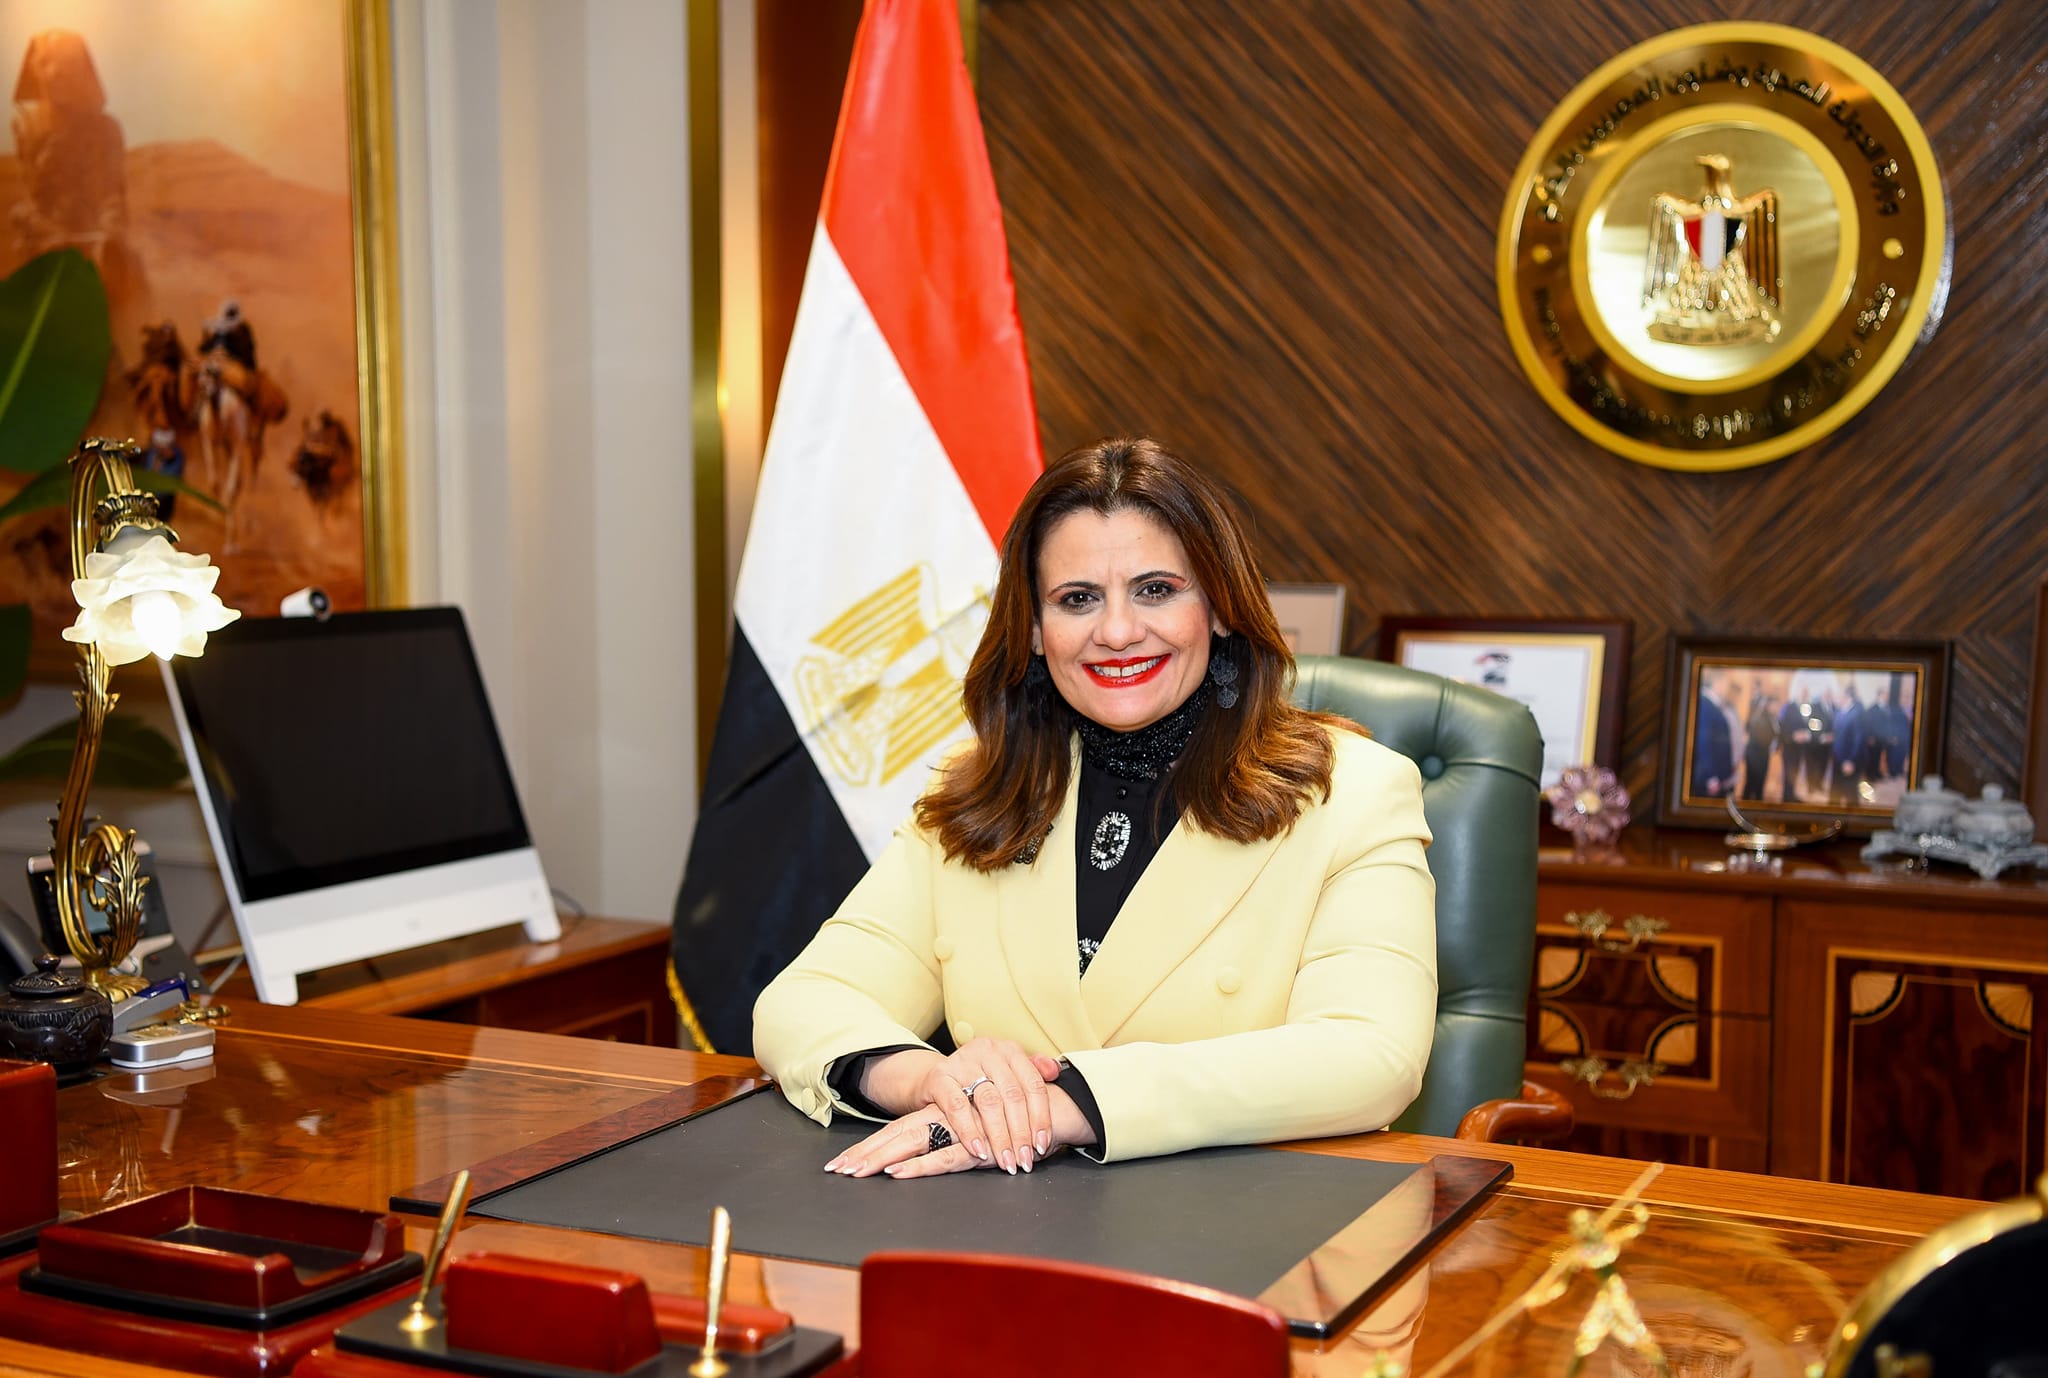 وزيرة الهجرة: فخورة بالتقدير العالمي لمدينة شرم الشيخ كأفضل مقصد سياحي آمن 